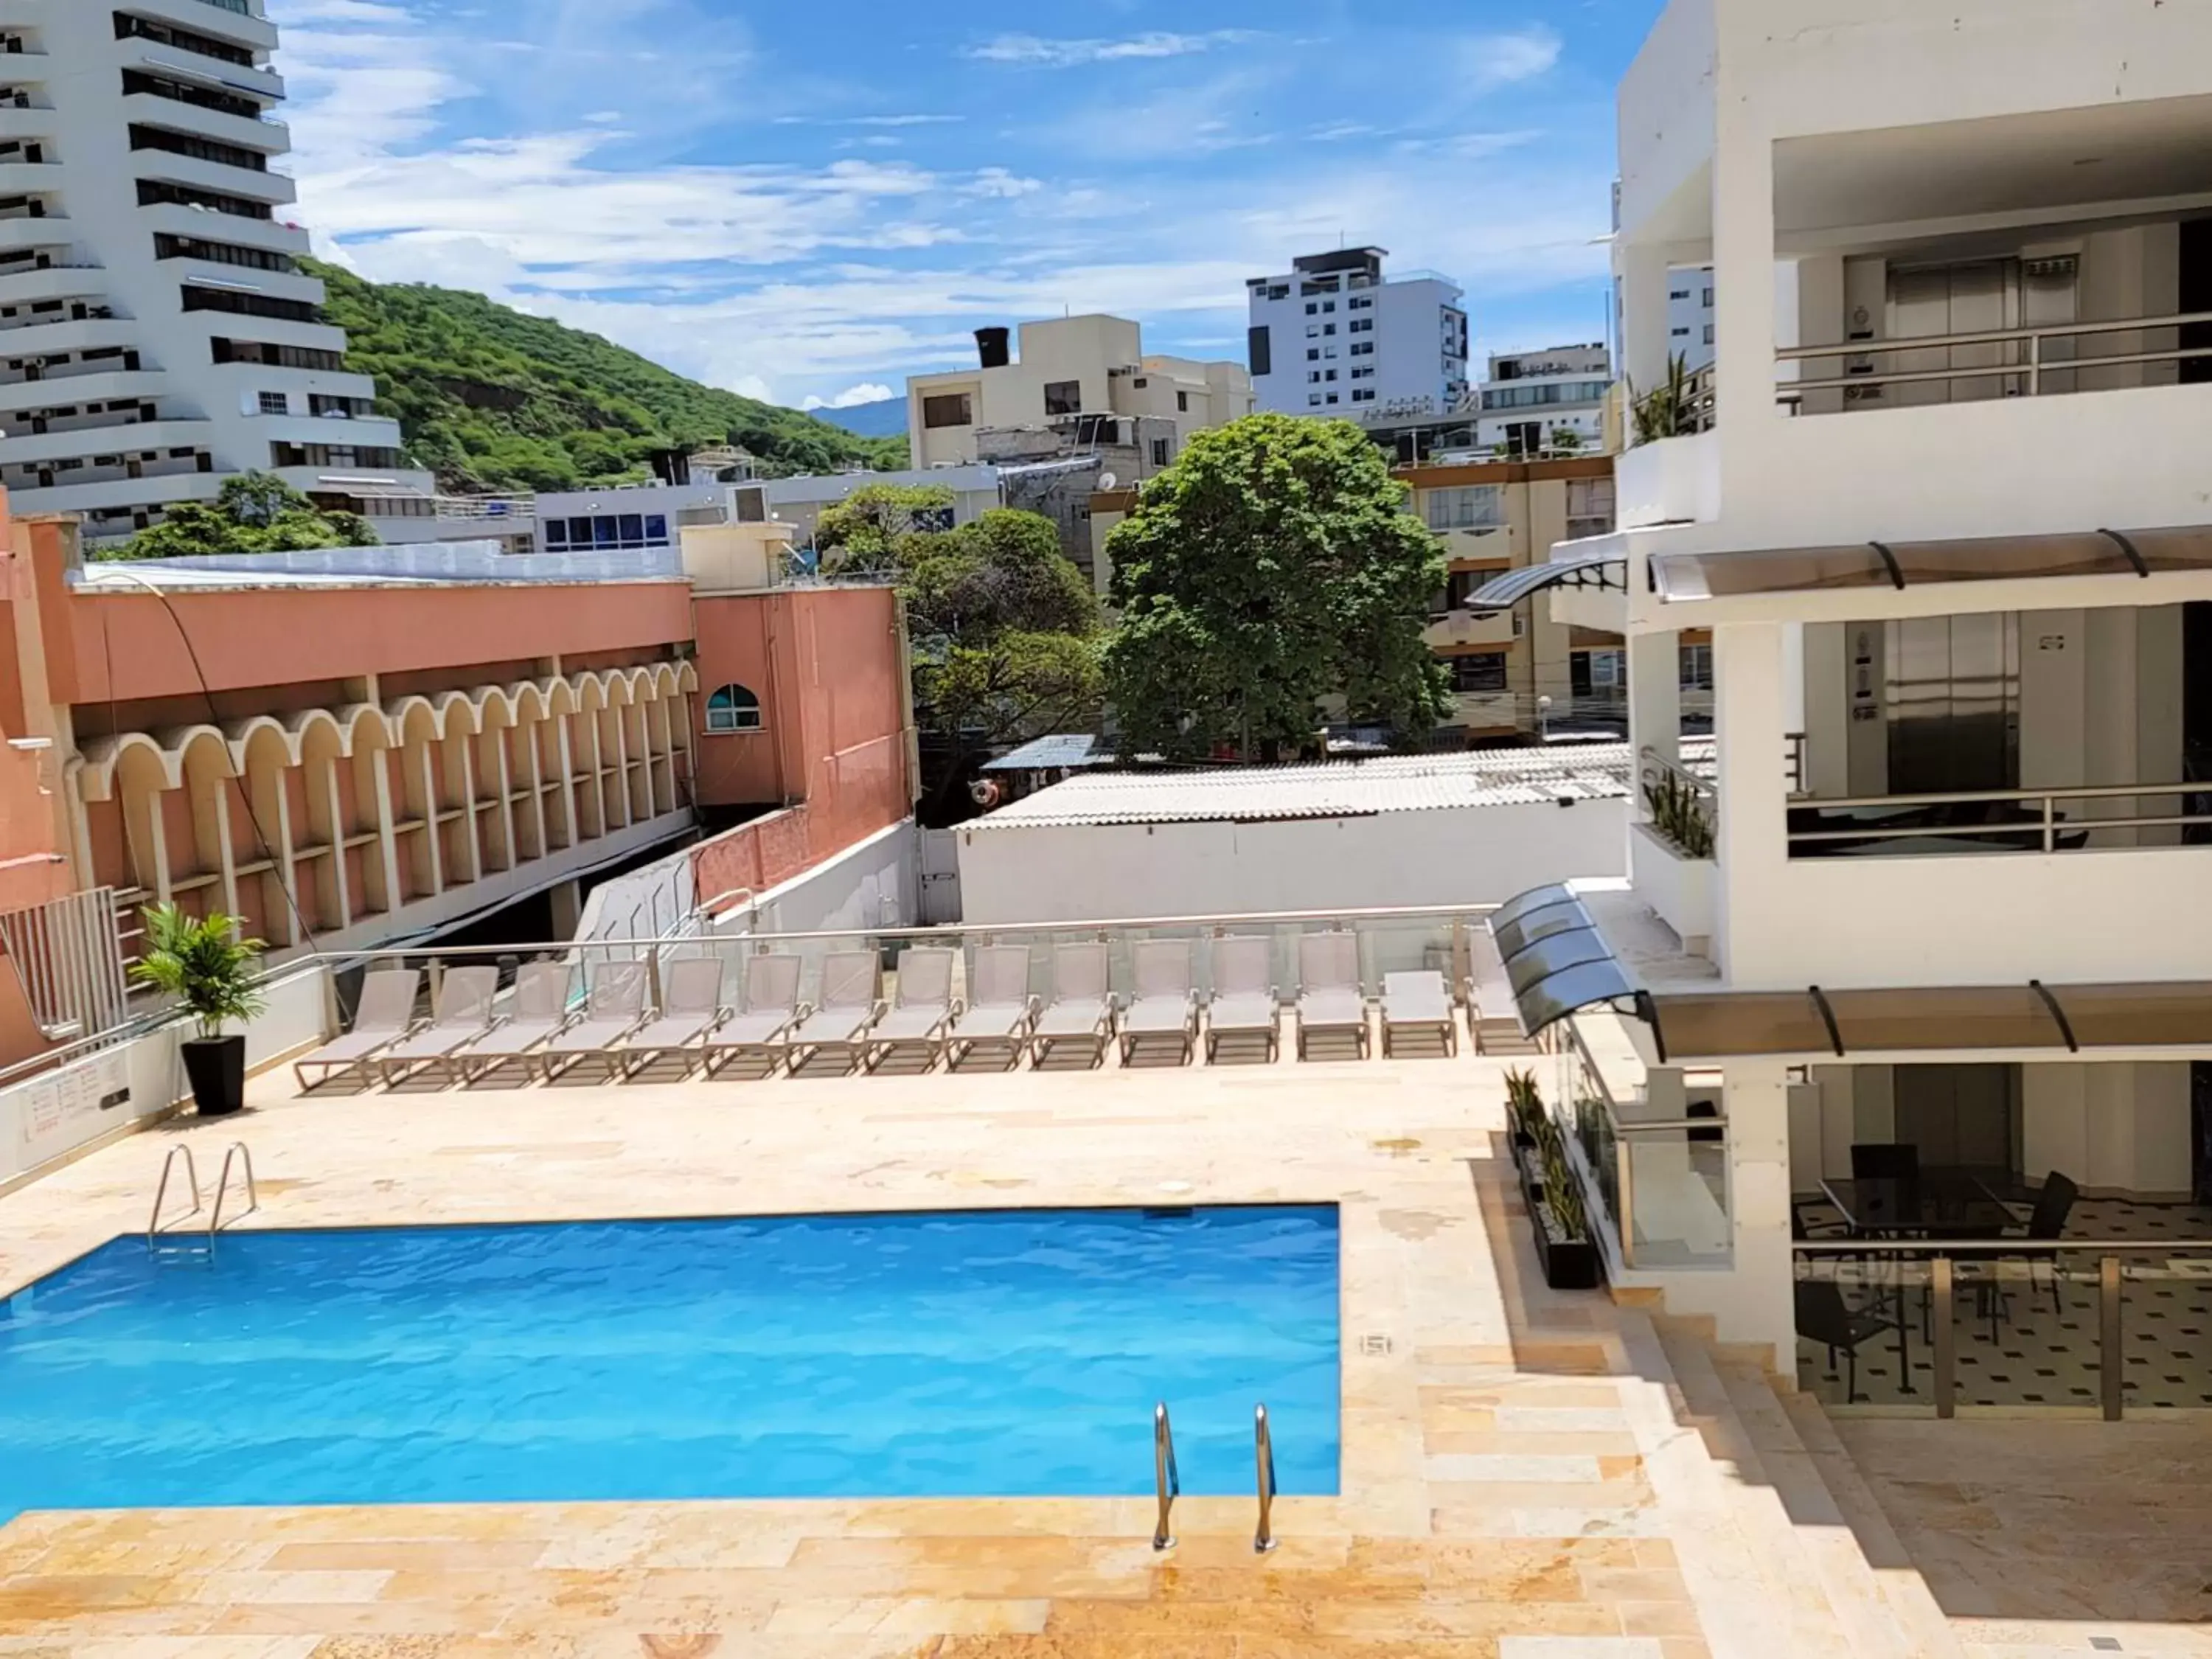 Pool View in Hotel Arhuaco